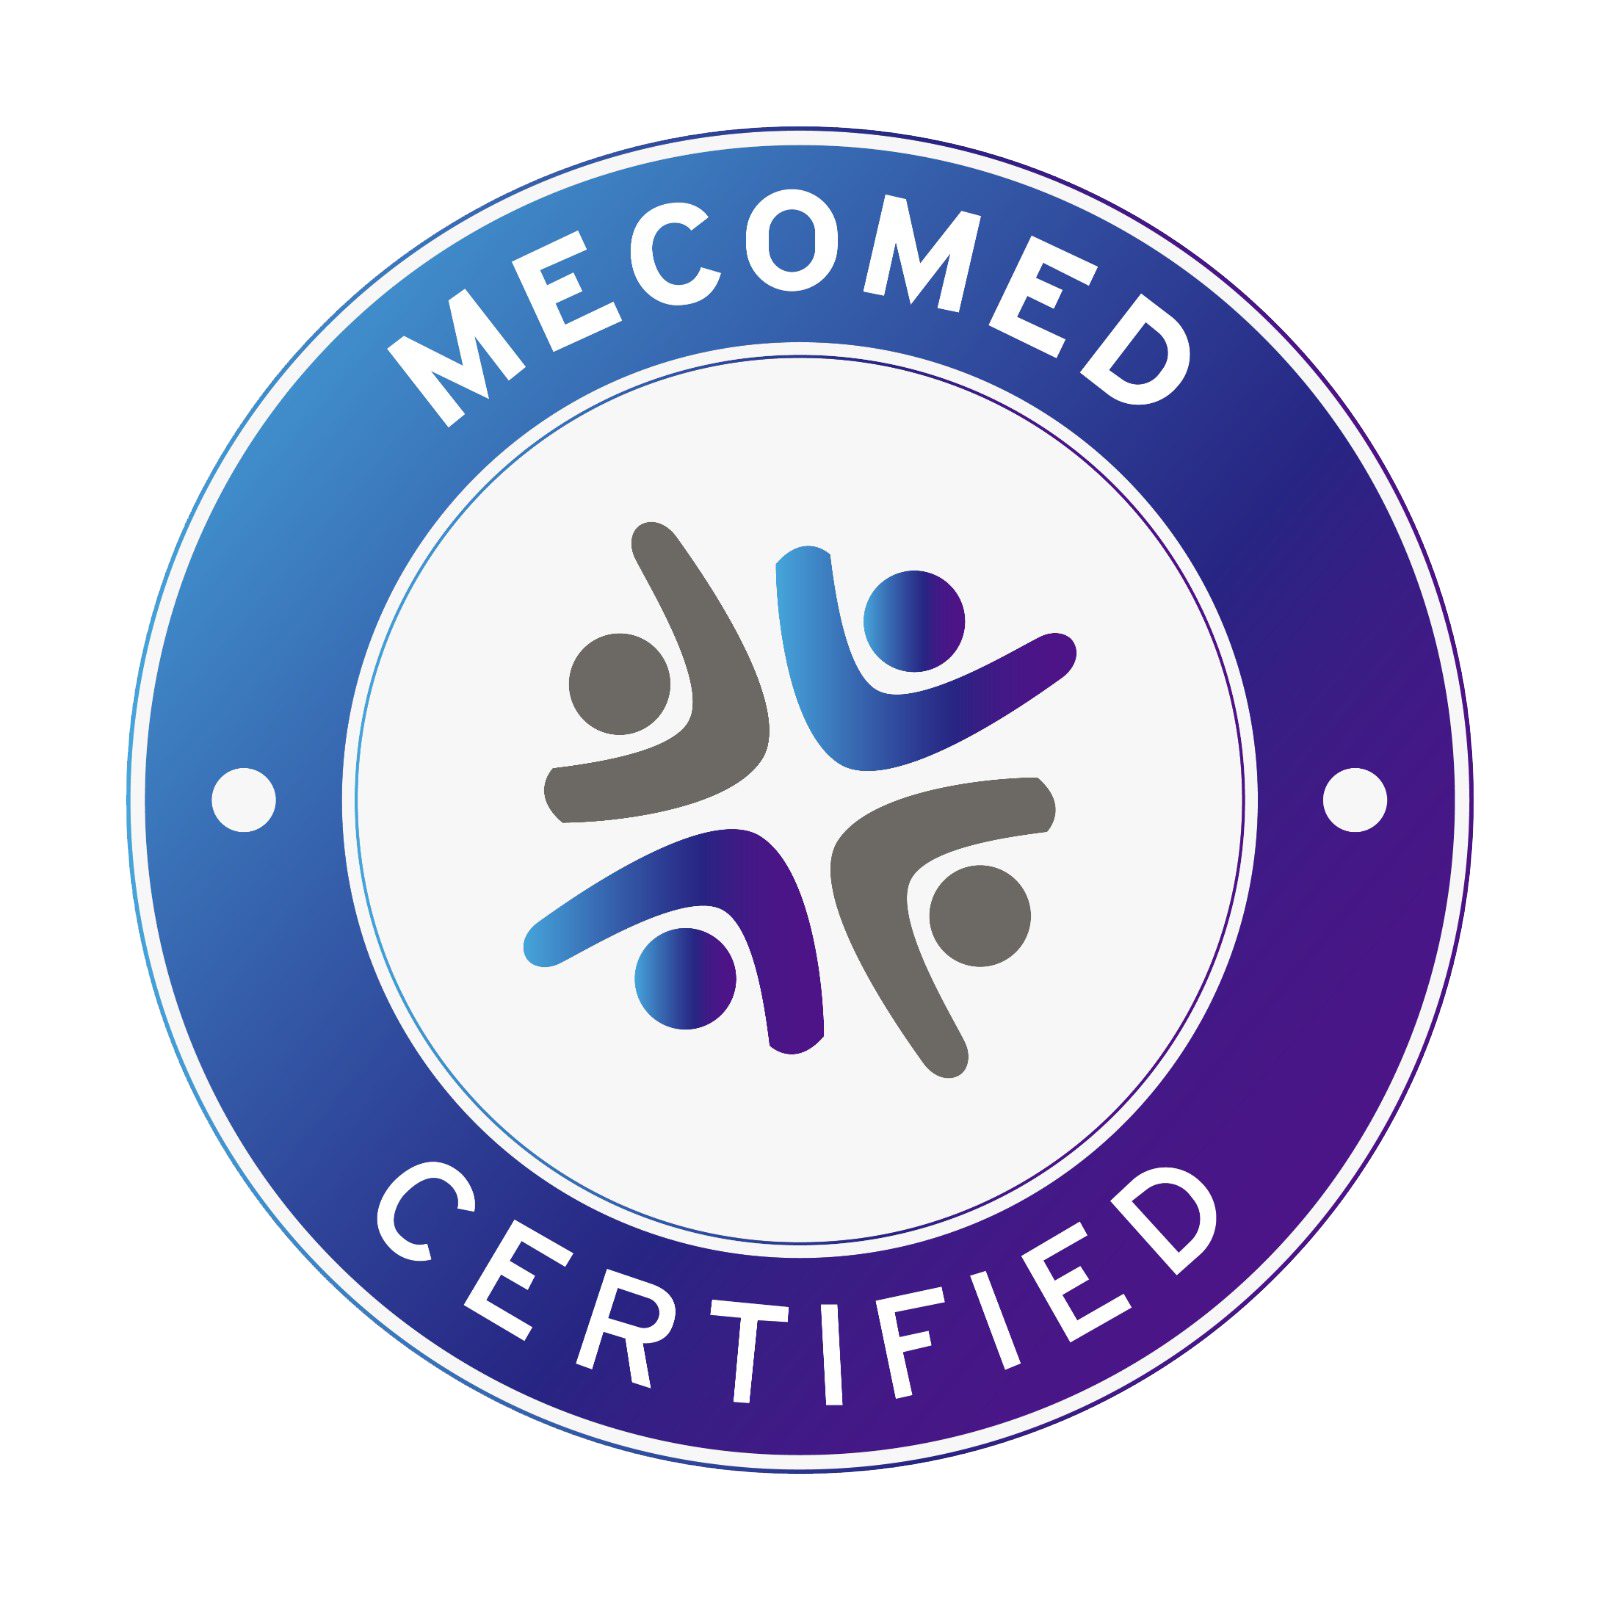 certified-logo